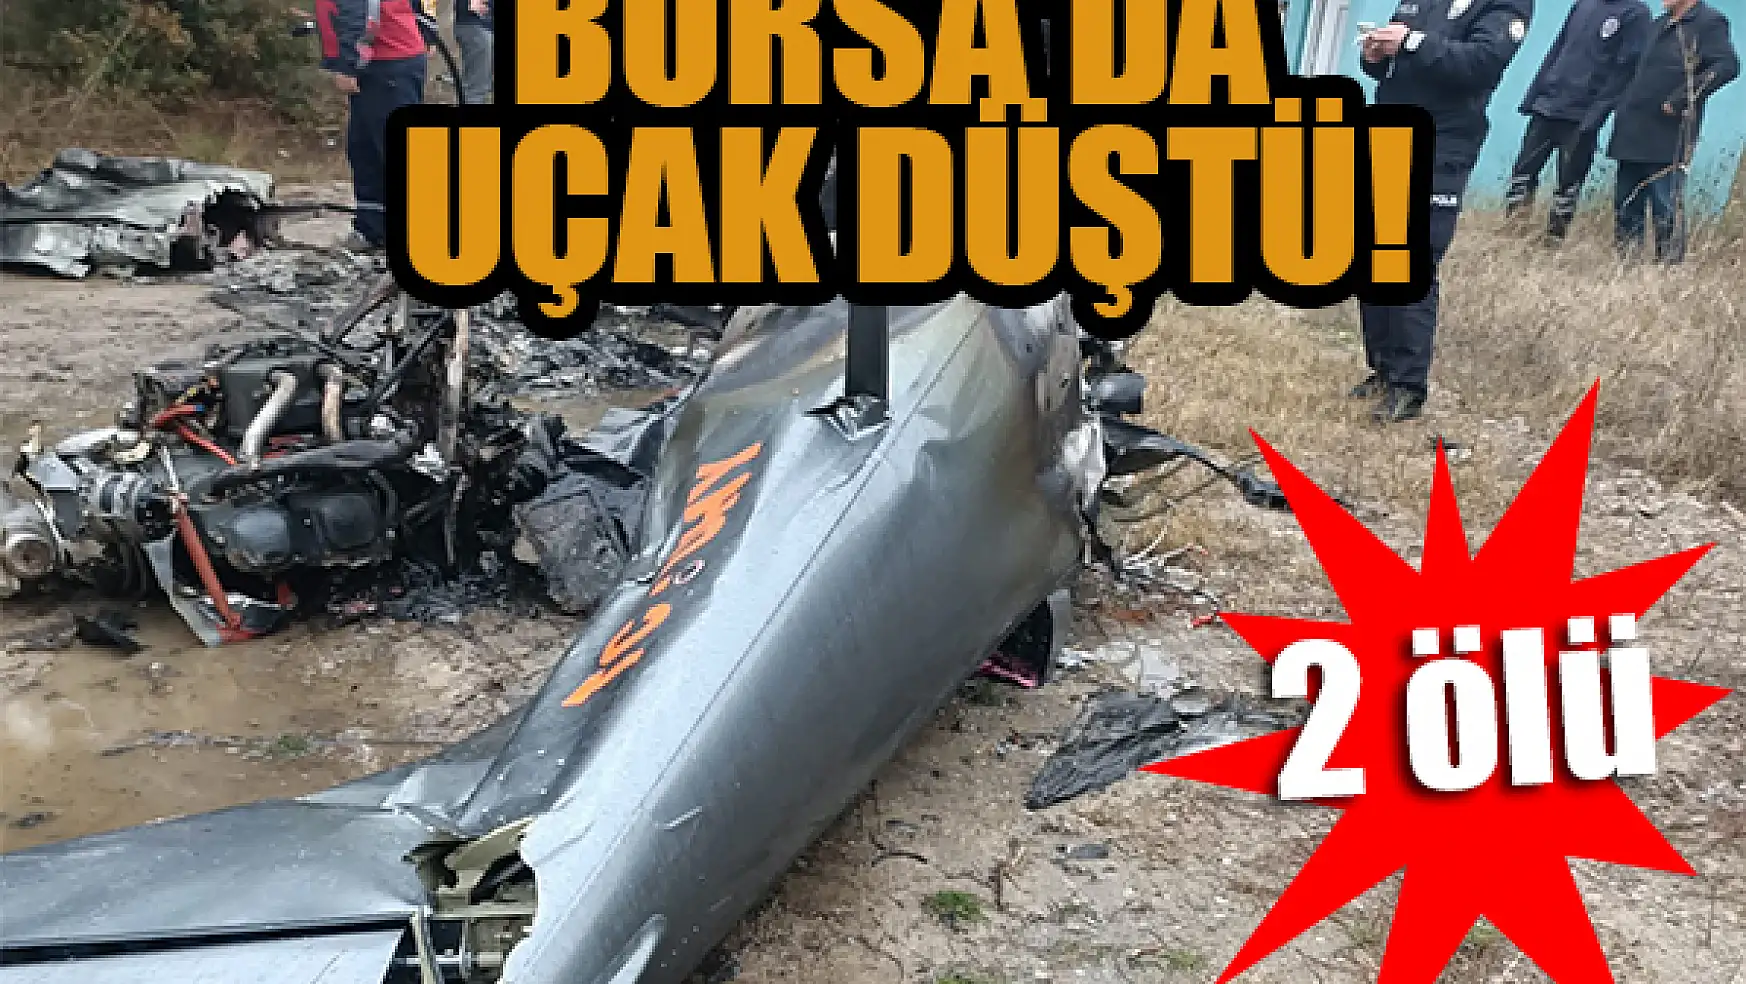 Bursa'da uçak düştü! İki kişi hayatını kaybetti